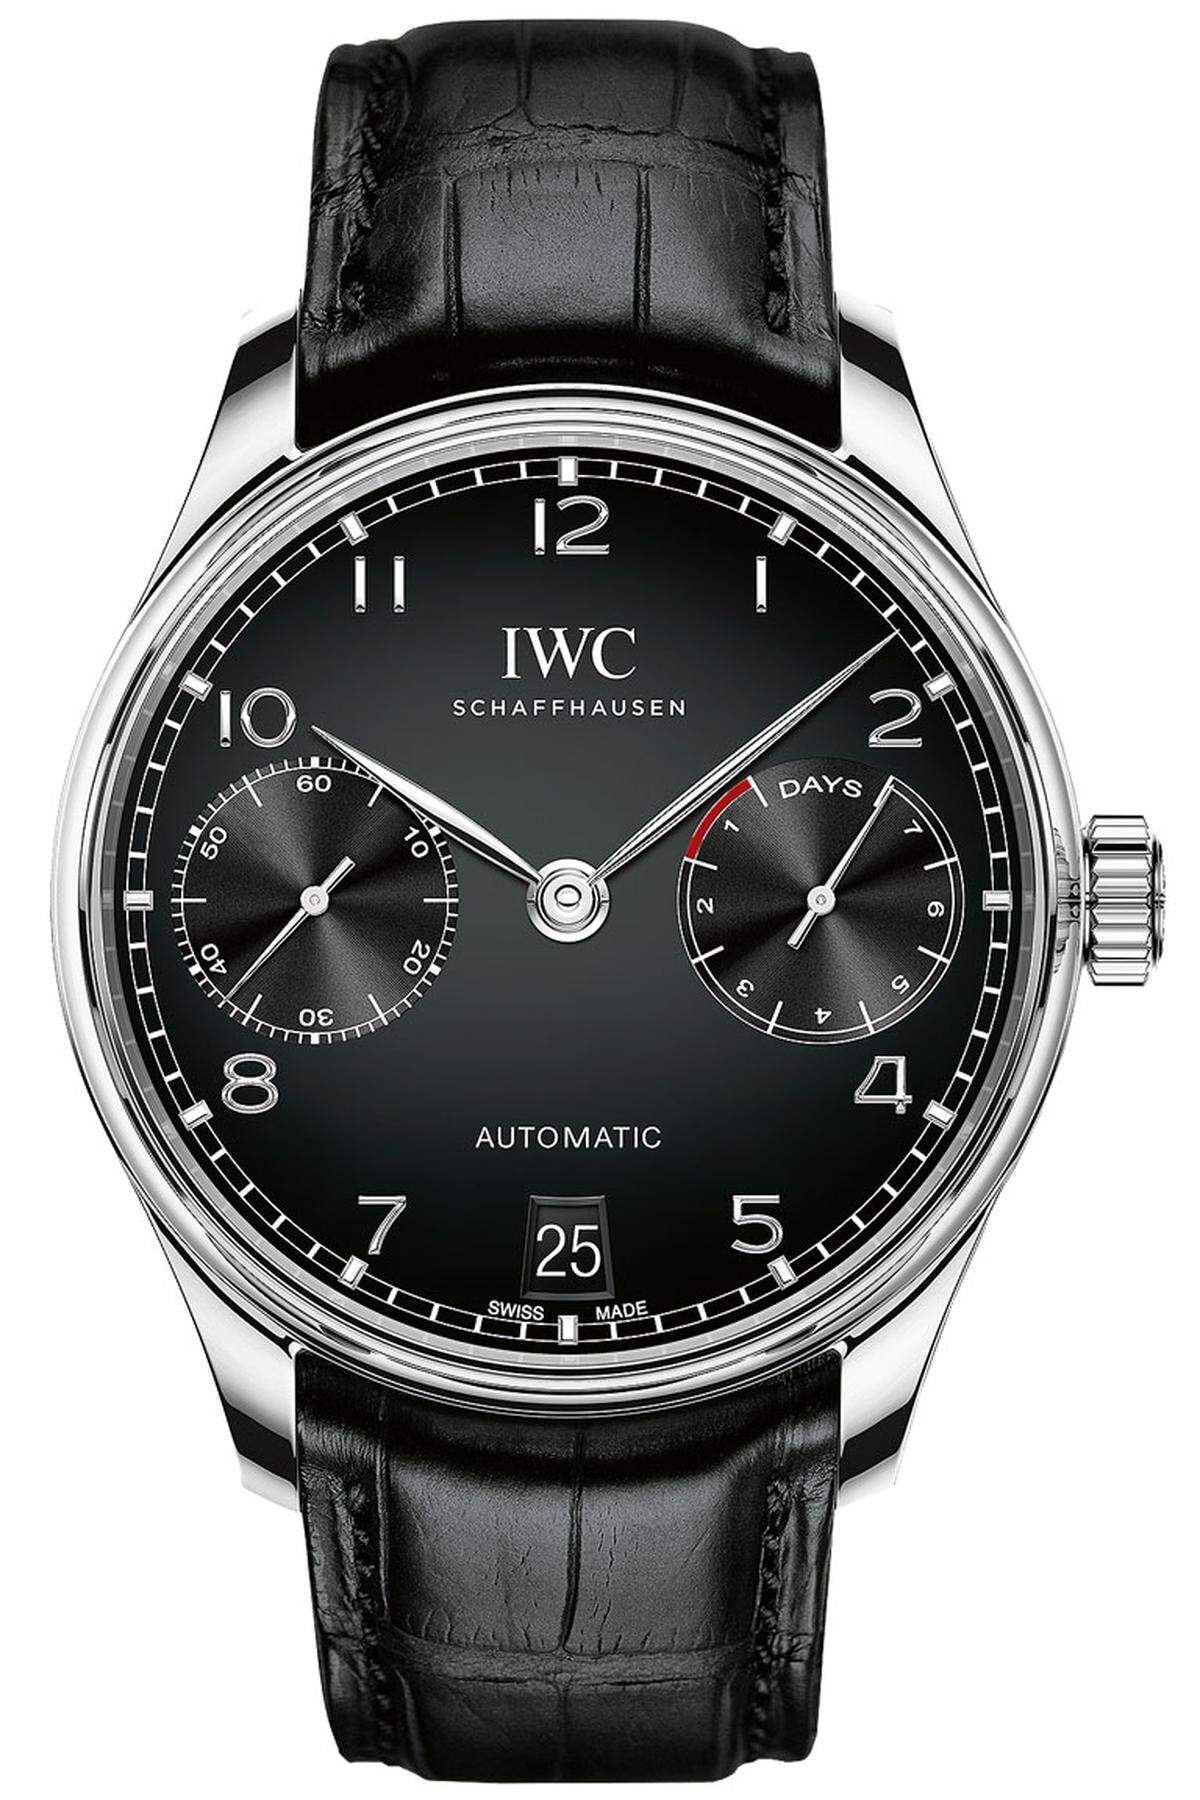 Die schönste, eleganteste Armbanduhr, wenn es ein etwas größeres Exem­plar sein darf. 42,3 mm Stahlgehäuse, IWC-Automatikkaliber mit 168 Stunden Gangreserve. Preis: 12.800 Euro.  